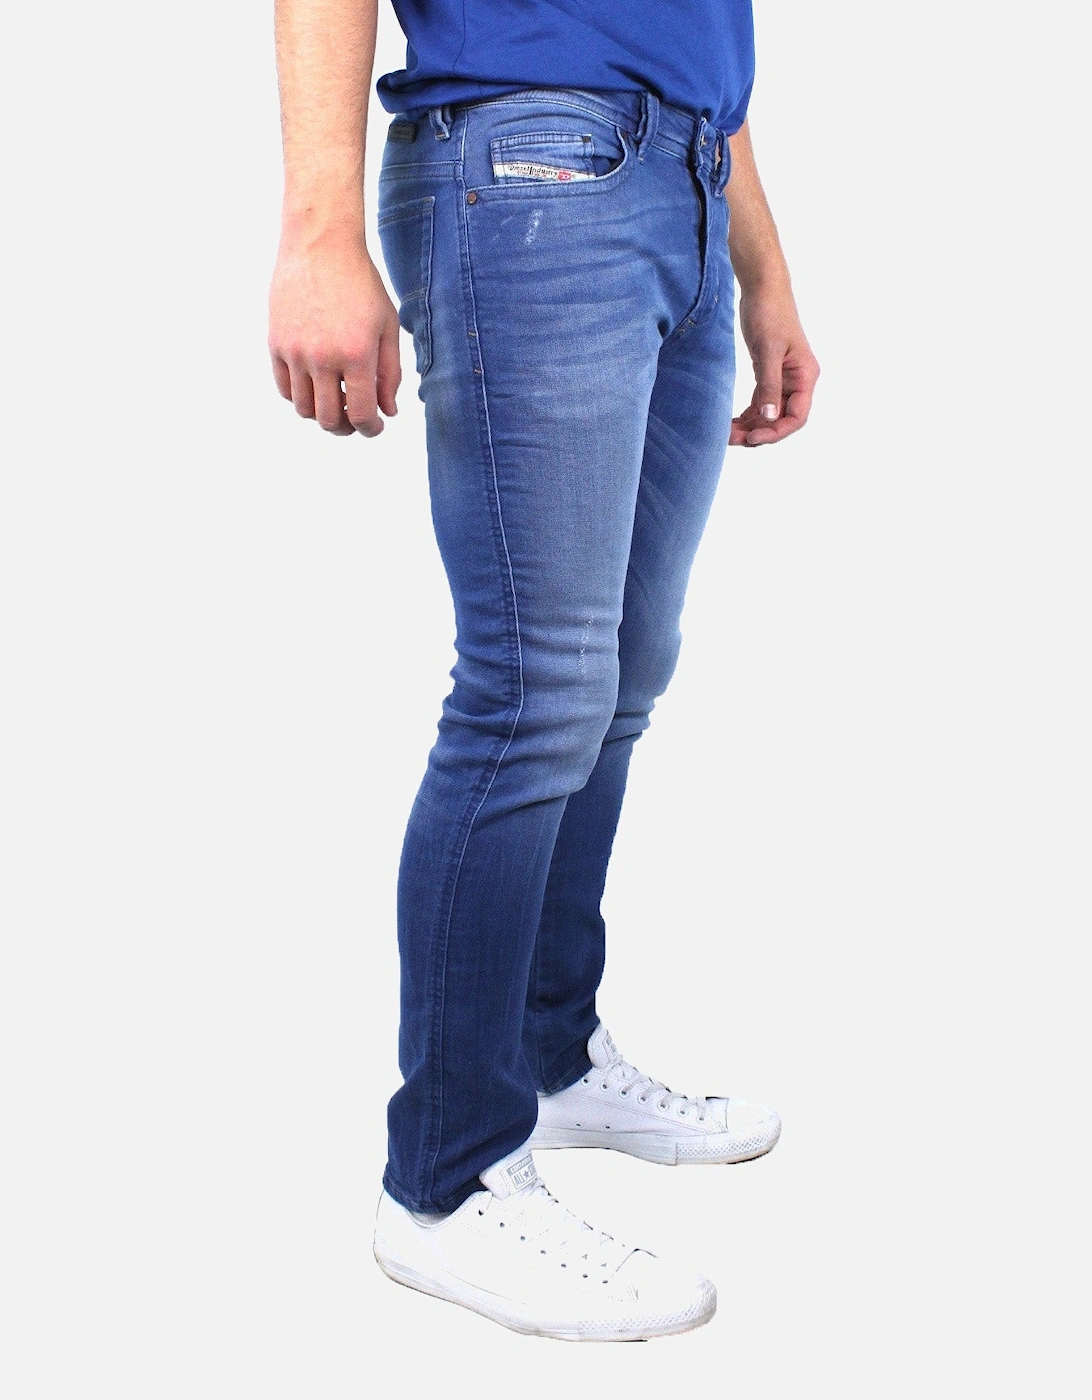 Thavar-NE 0837T Jeans